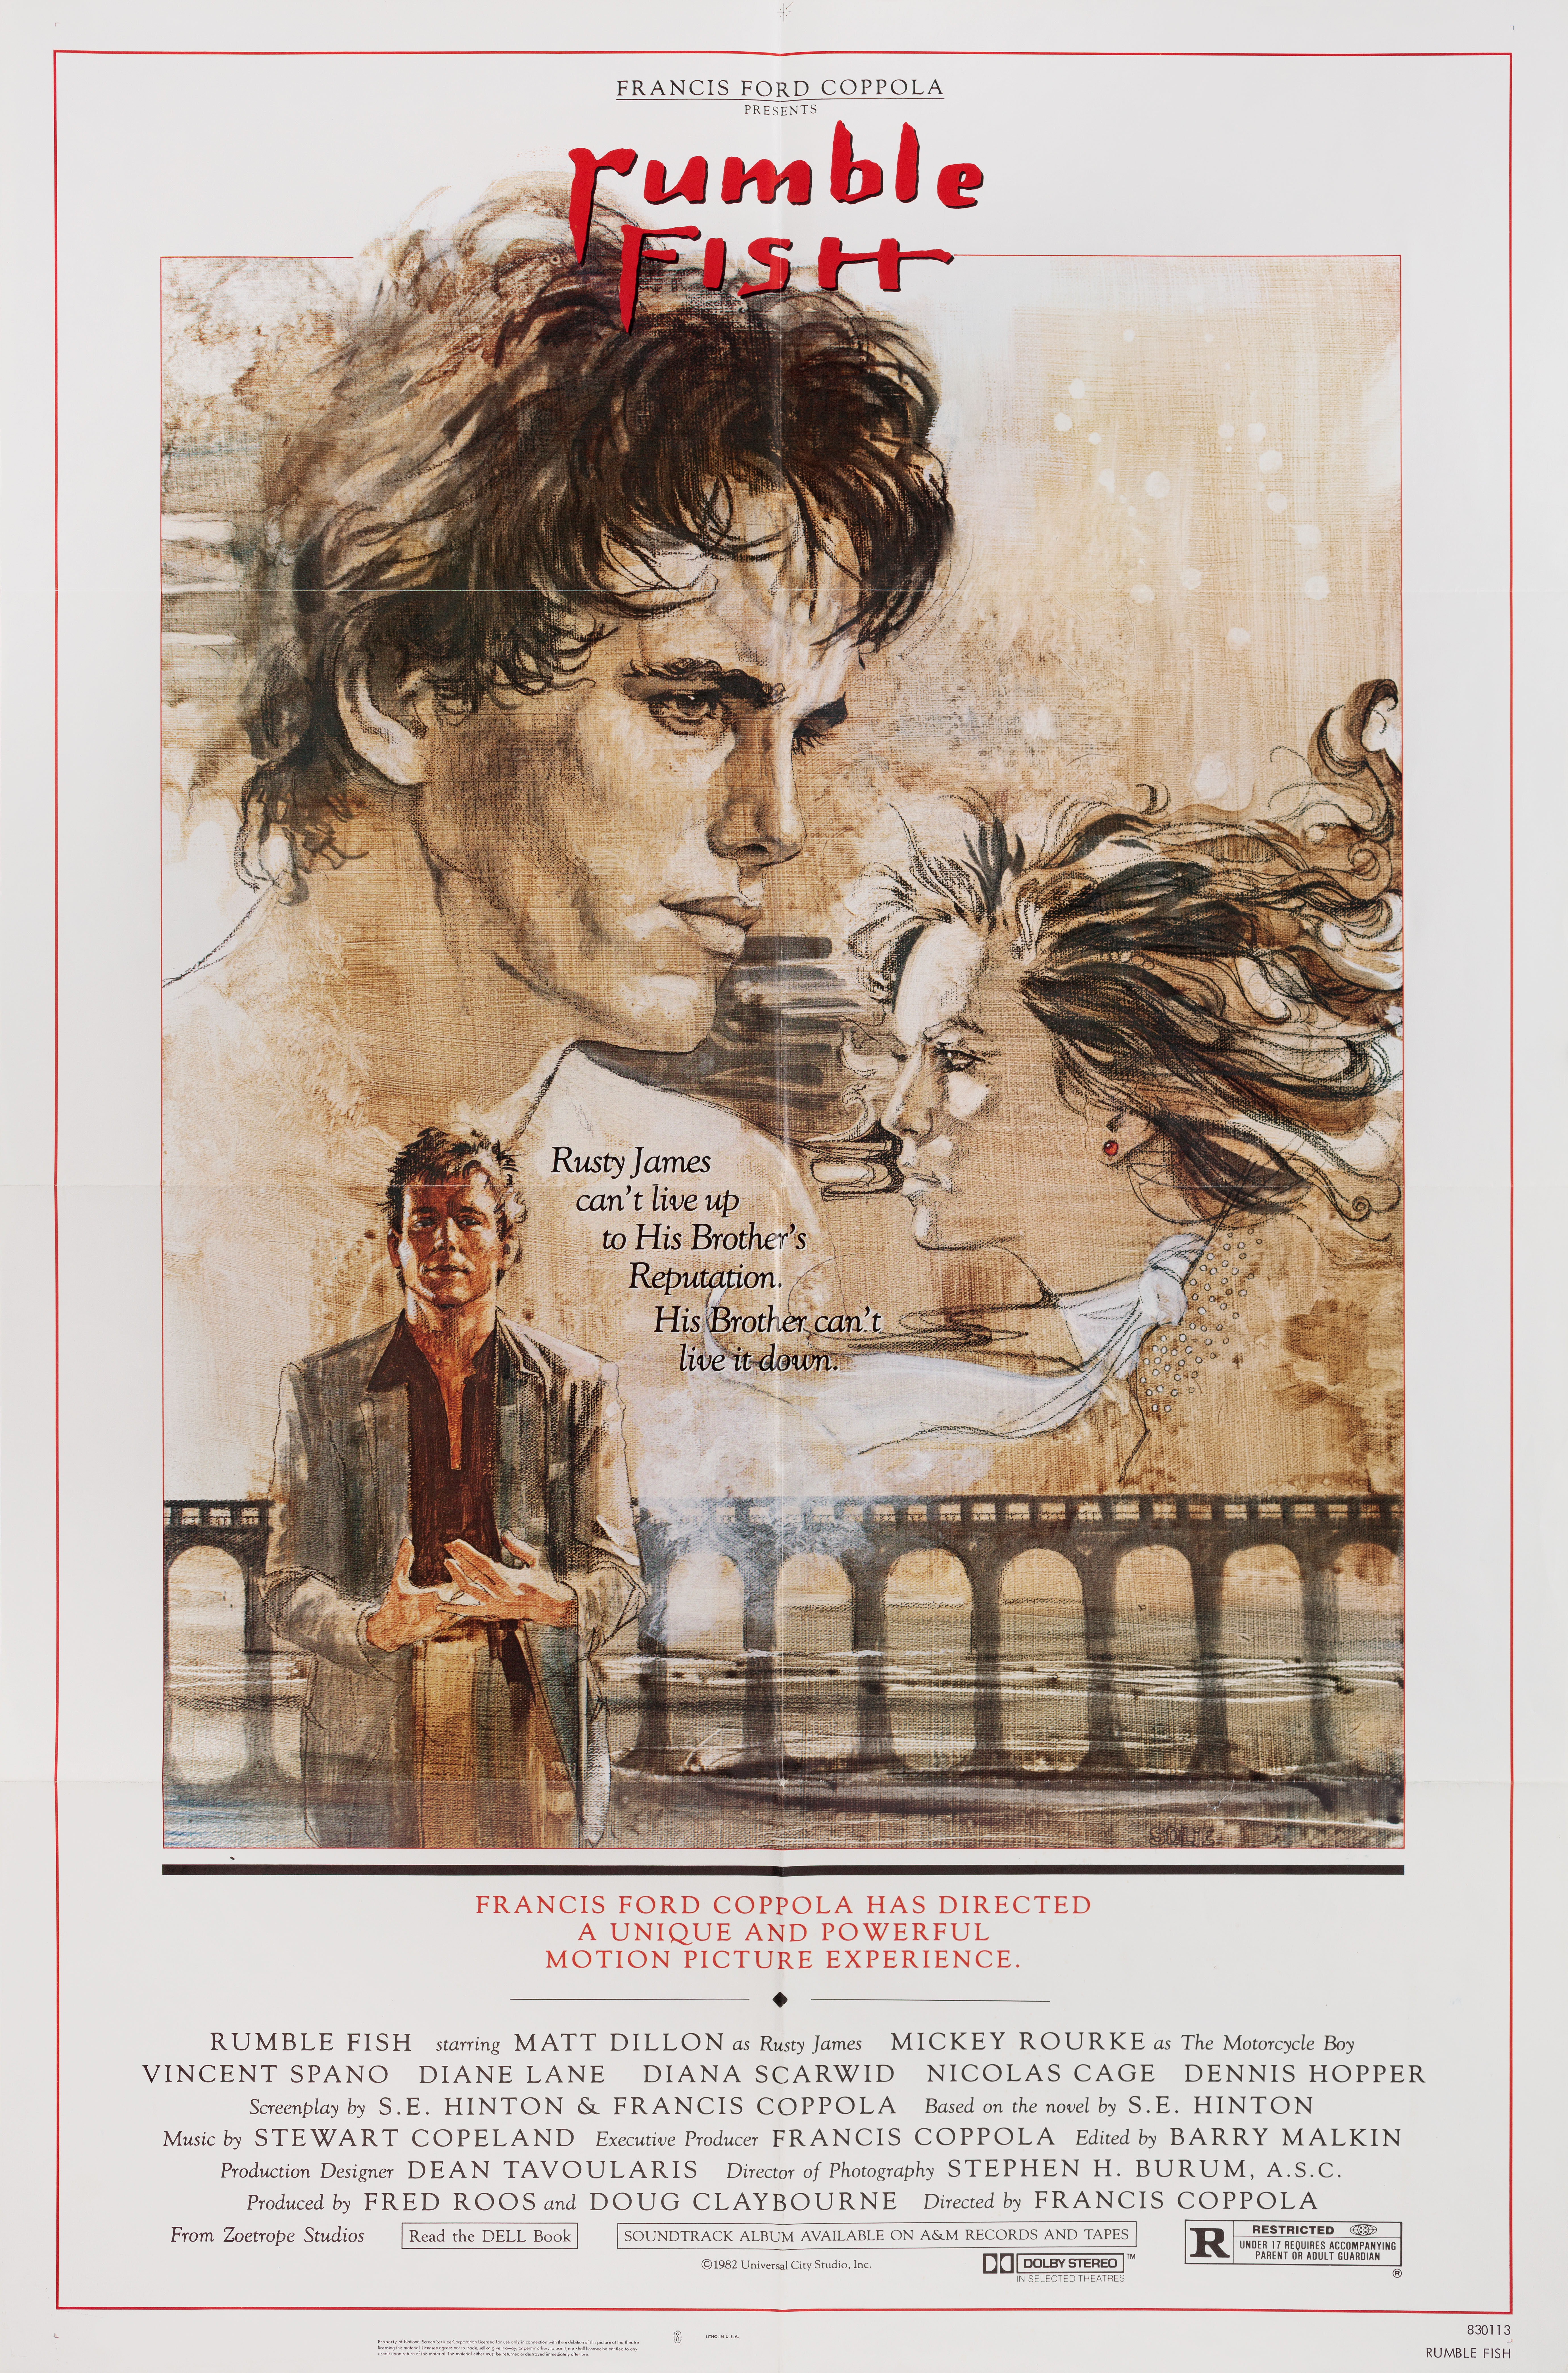 Бойцовая рыбка (Rumble Fish, 1983), режиссёр Фрэнсис Форд Коппола, иллюстрированный постер к фильму (США, 1983 год), автор Джон Соли